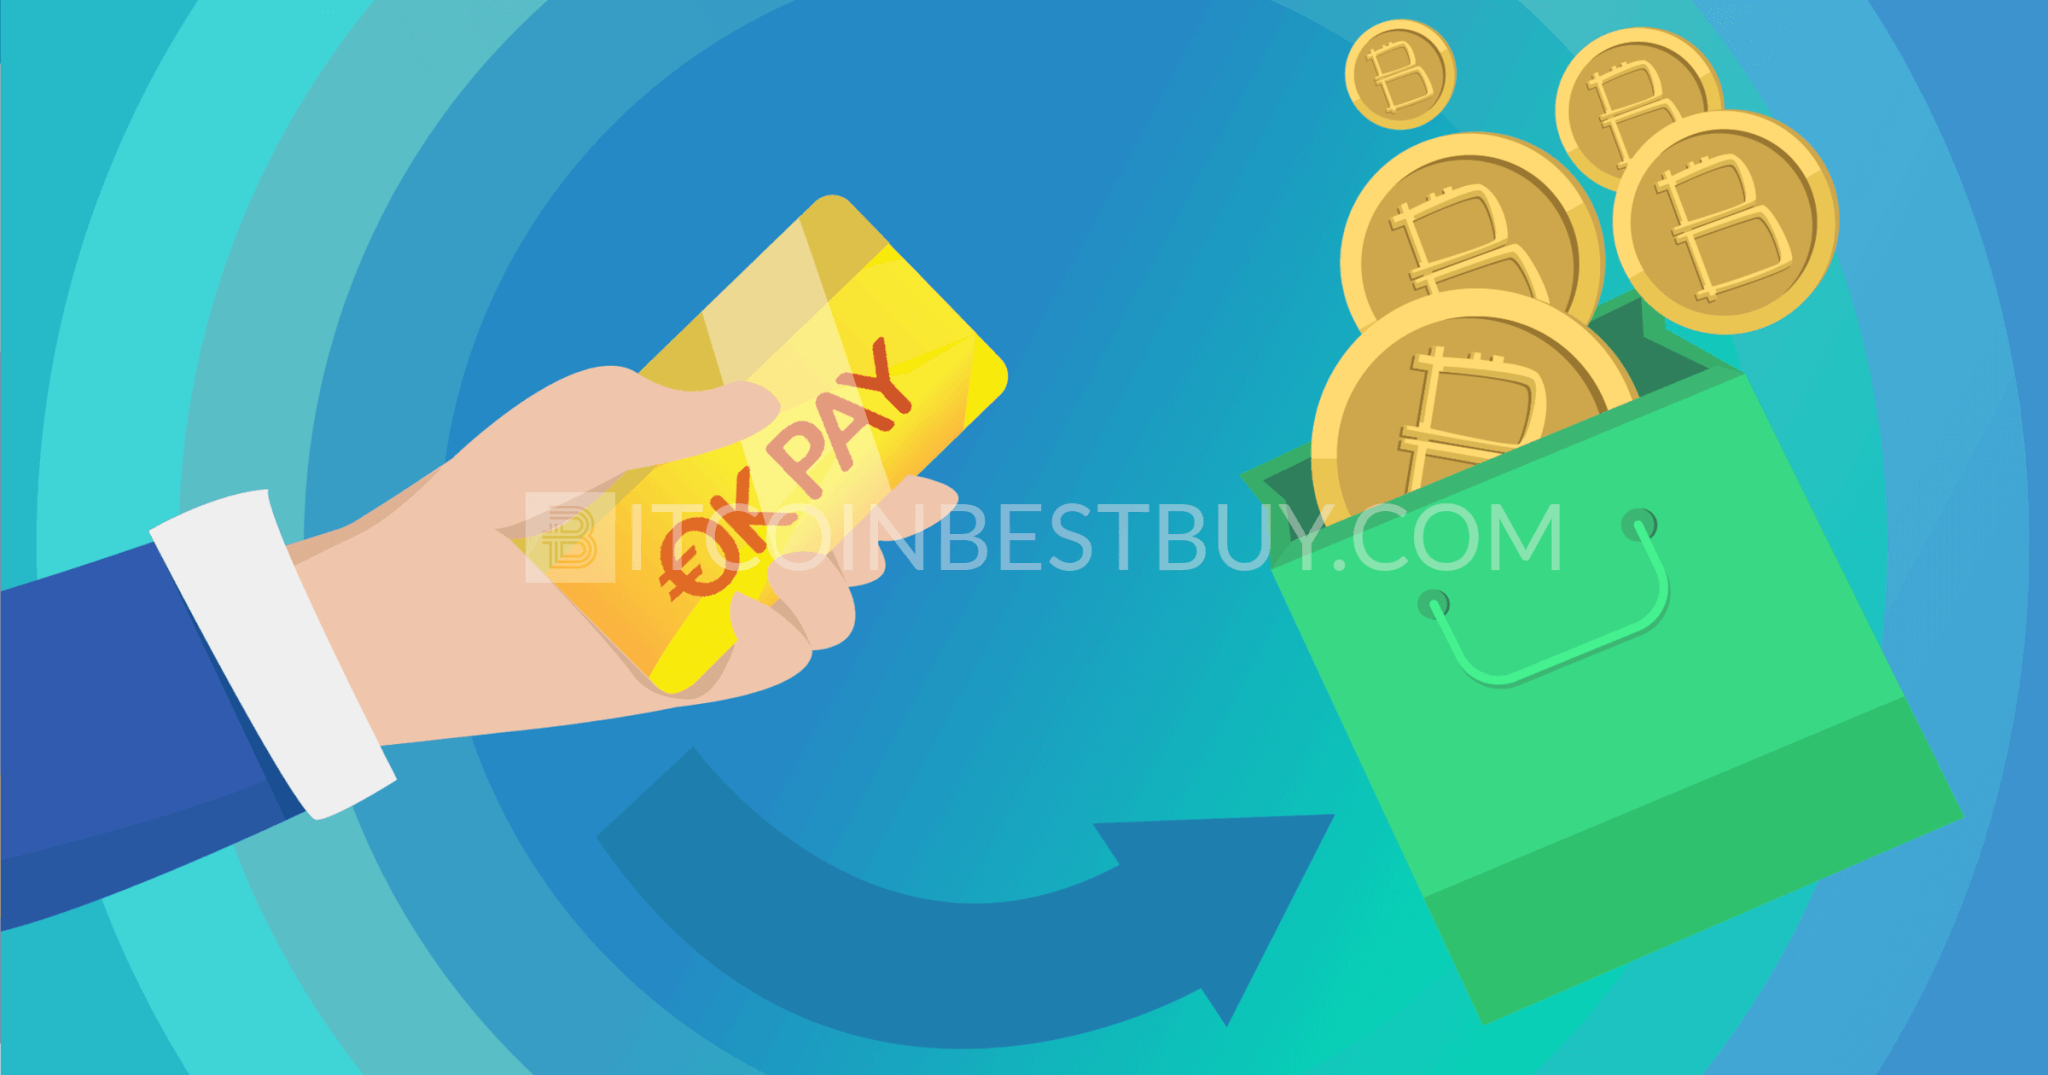 Kupowanie bitcoinów za pomocą OKPay